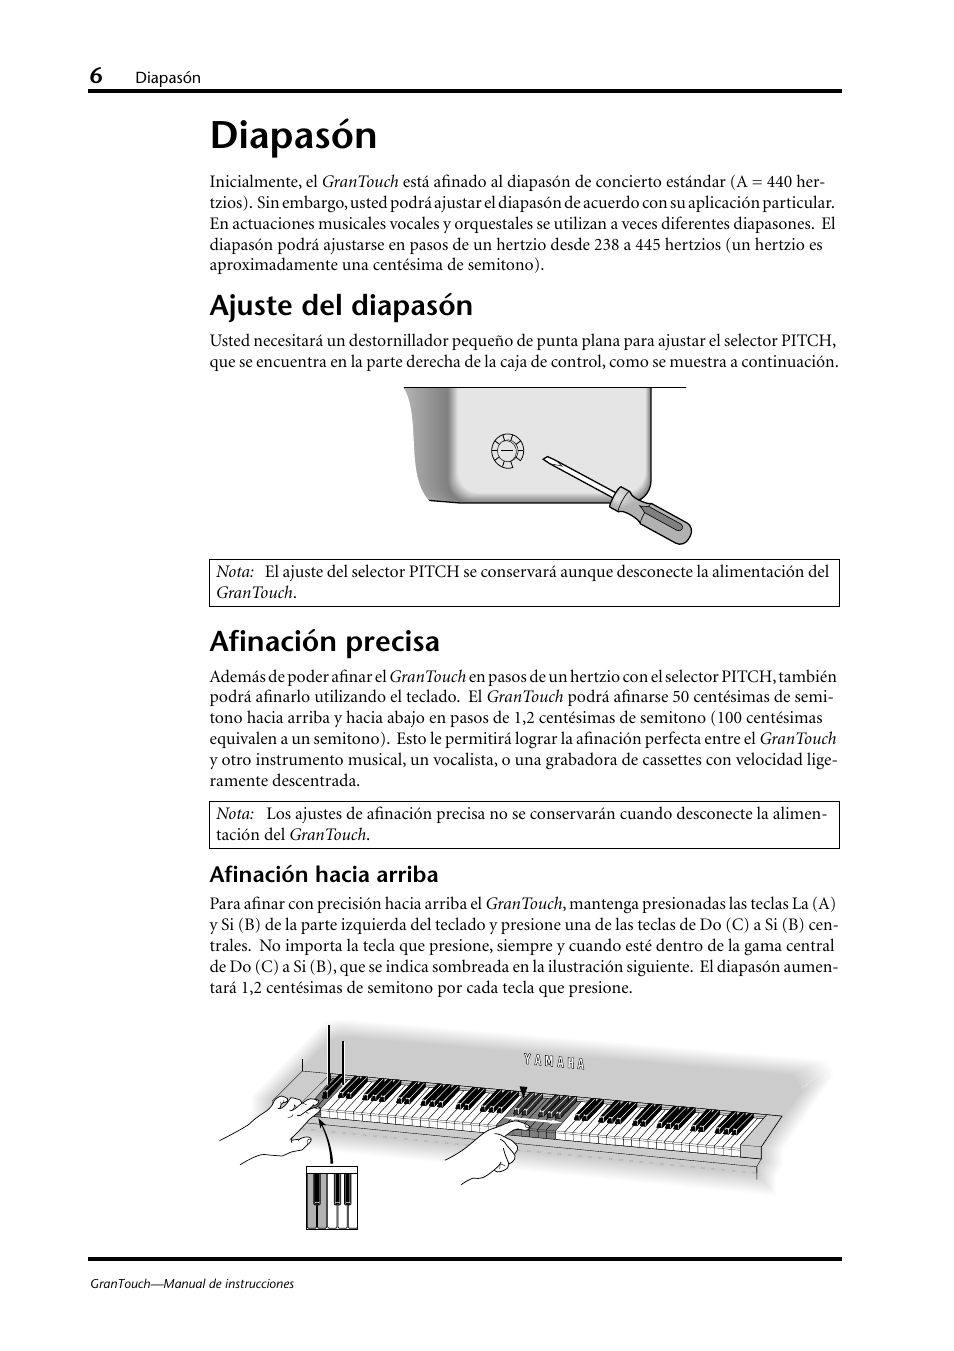 Diapasón, Ajuste del diapasón, Afinación precisa | Afinación hacia arriba | Yamaha GranTouch GT7 Manual del usuario | Página 11 / 19